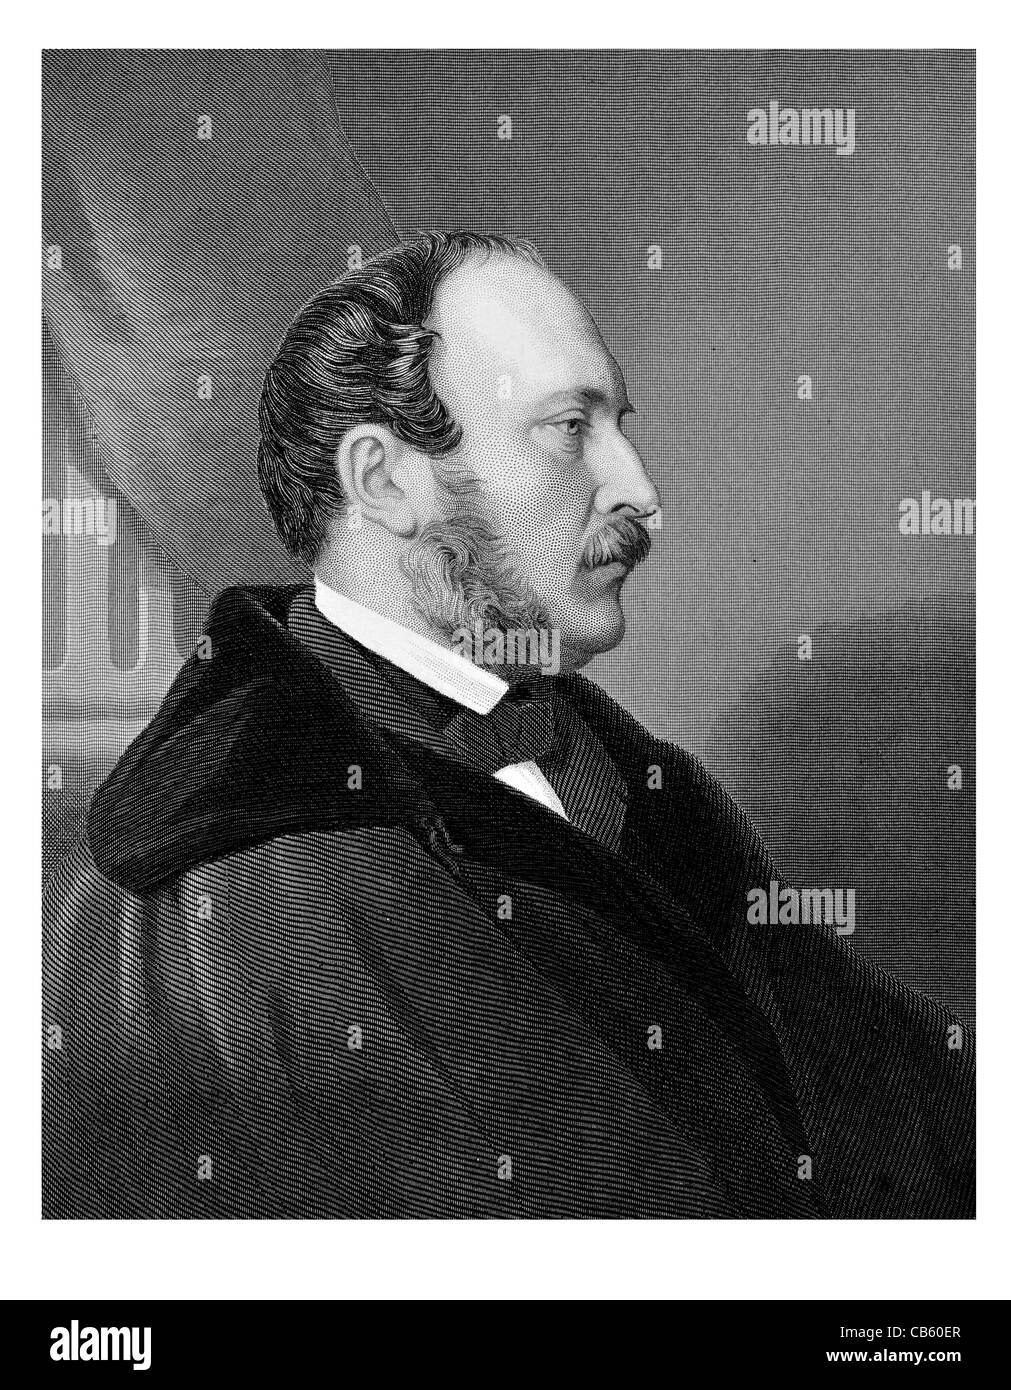 Retrato Príncipe Consorte Alberto de Saxe-Coburg Gotha Francisco Augusto Charles Emmanuel Reina Victoria la abolición de la esclavitud Foto de stock